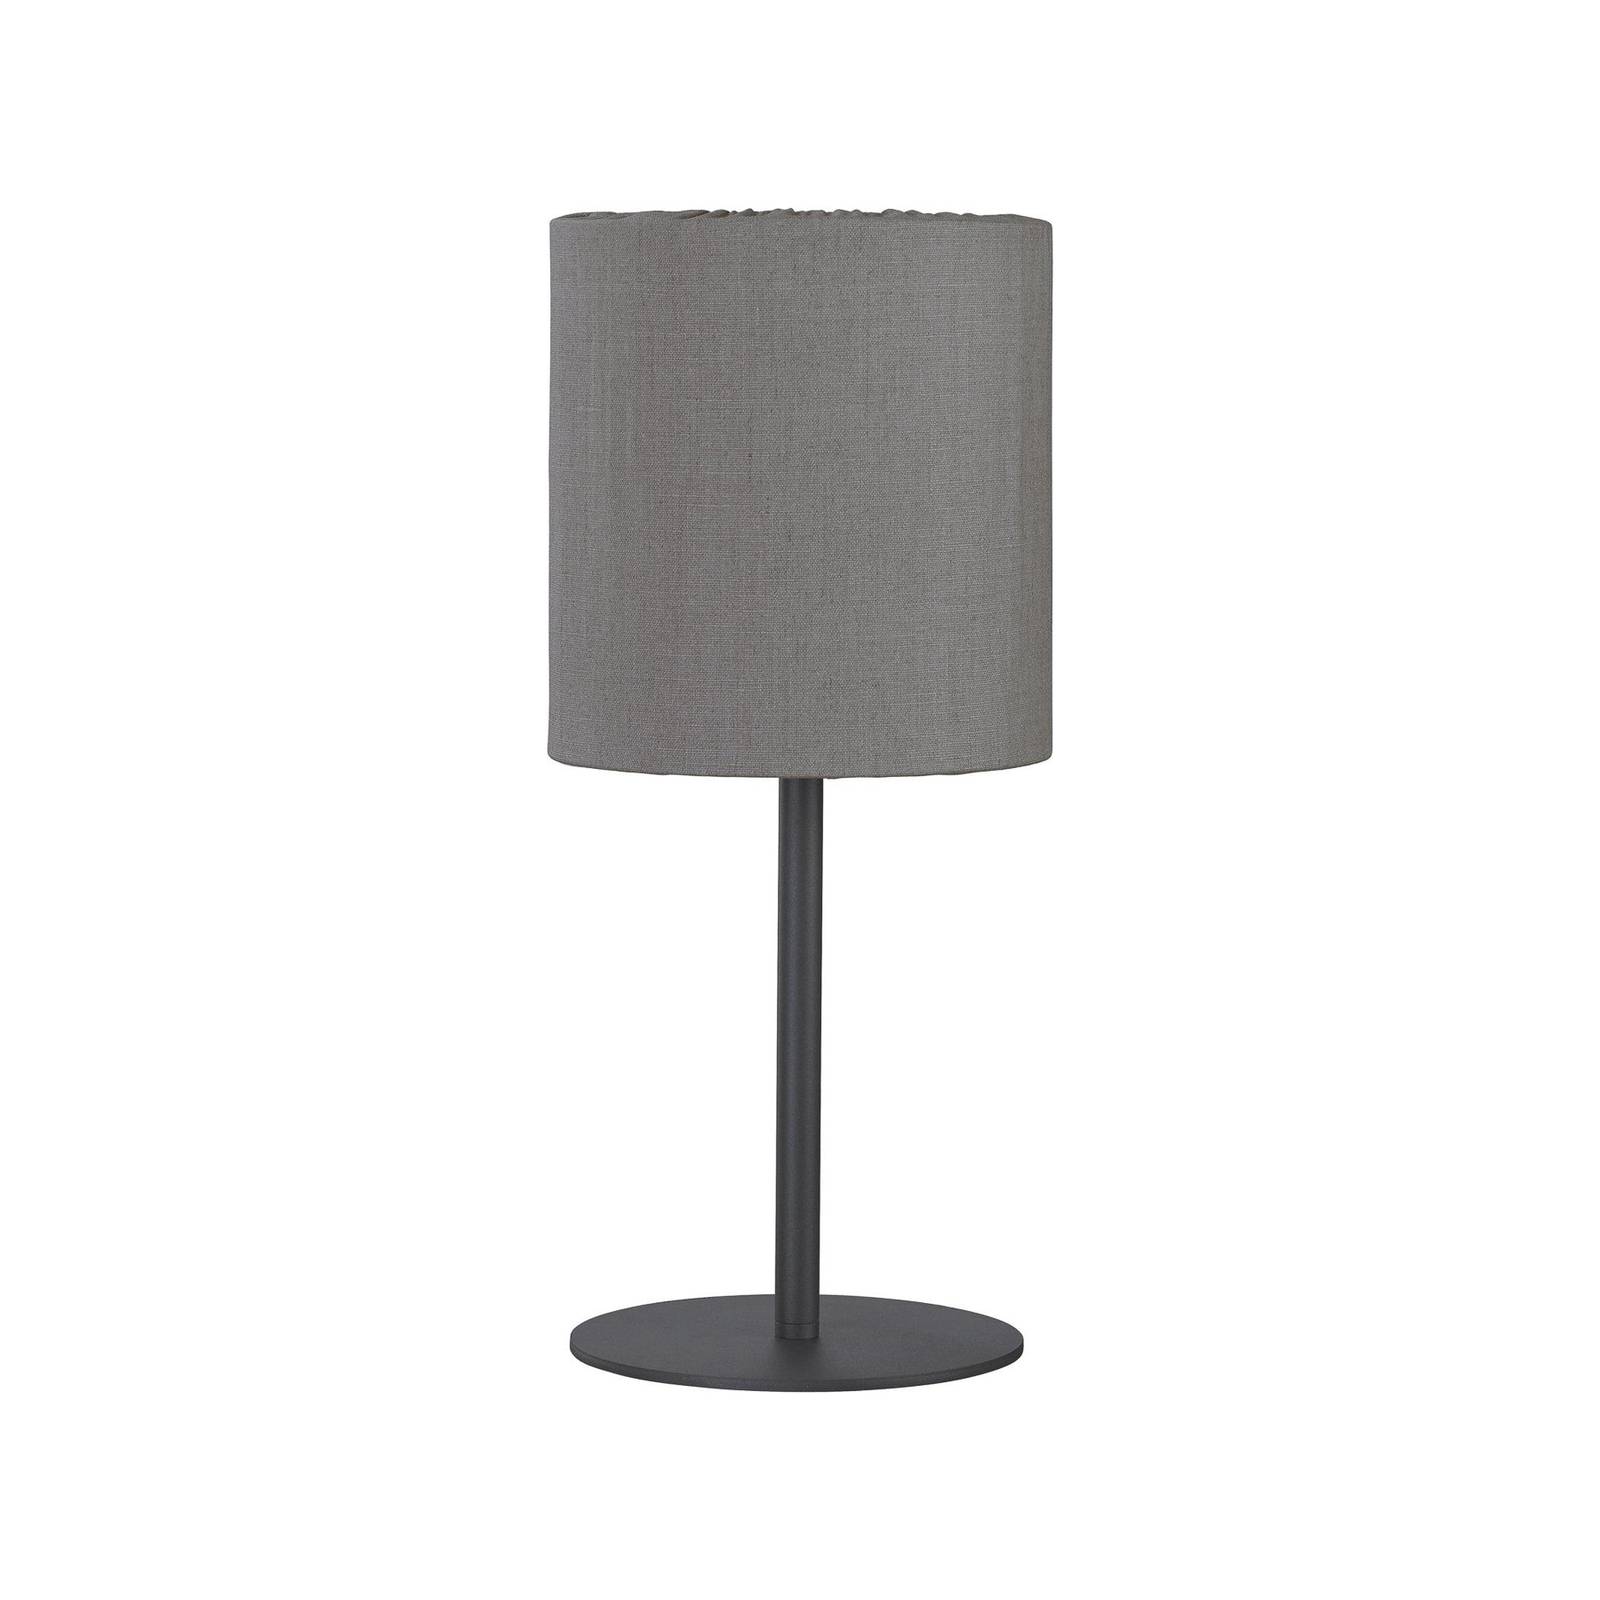 E-shop PR Home Vonkajšia stolová lampa Agnar, tmavo sivá / hnedá, 57 cm